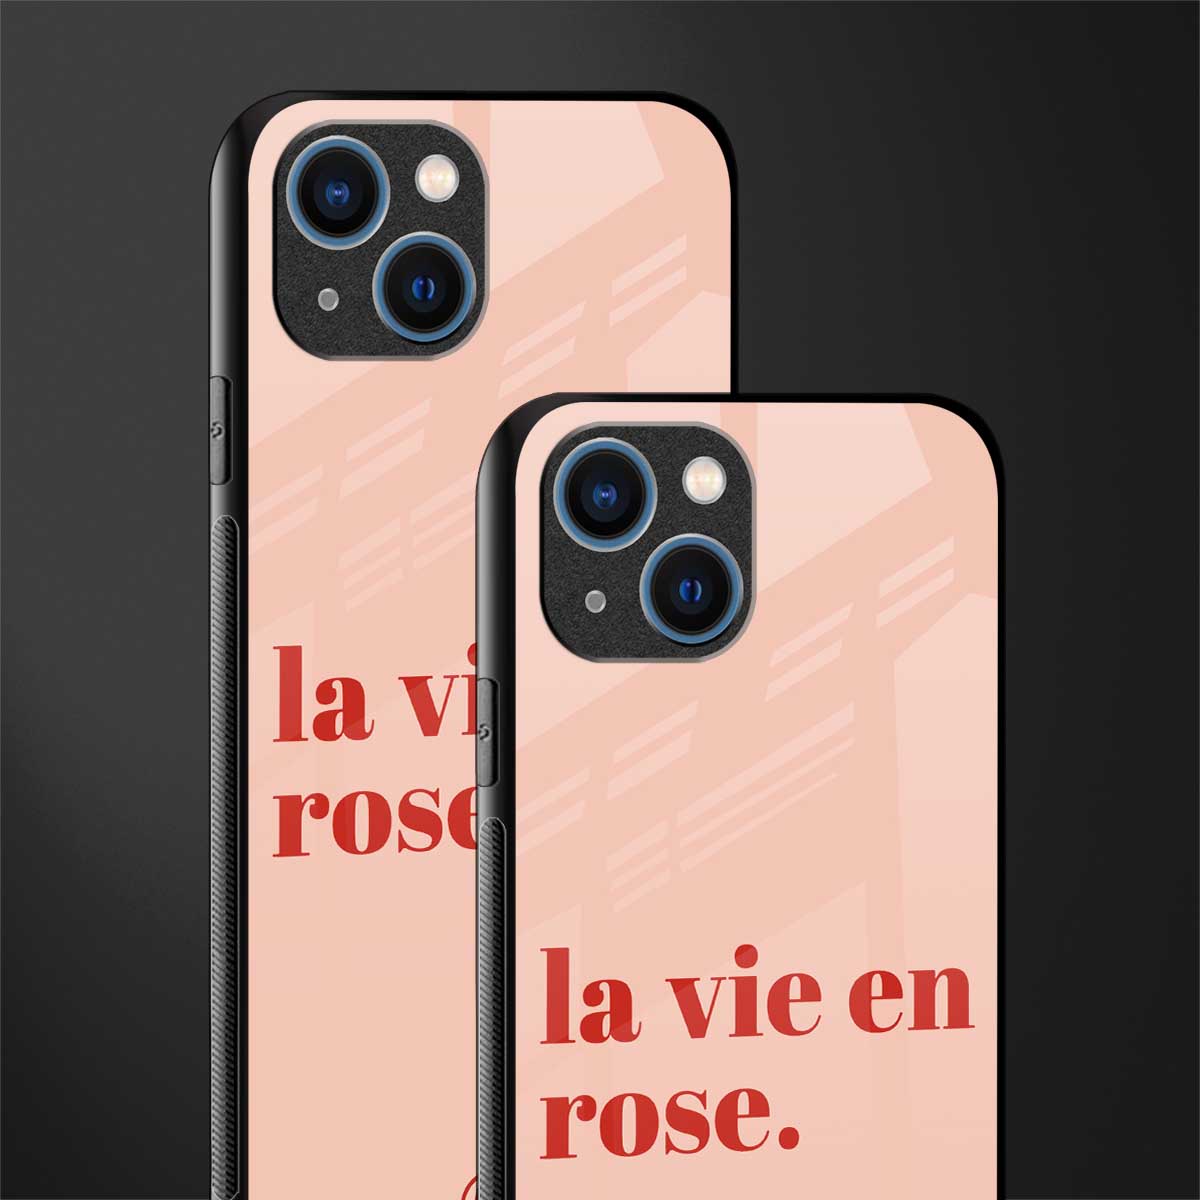 la vie en rose quote glass case for iphone 13 image-2